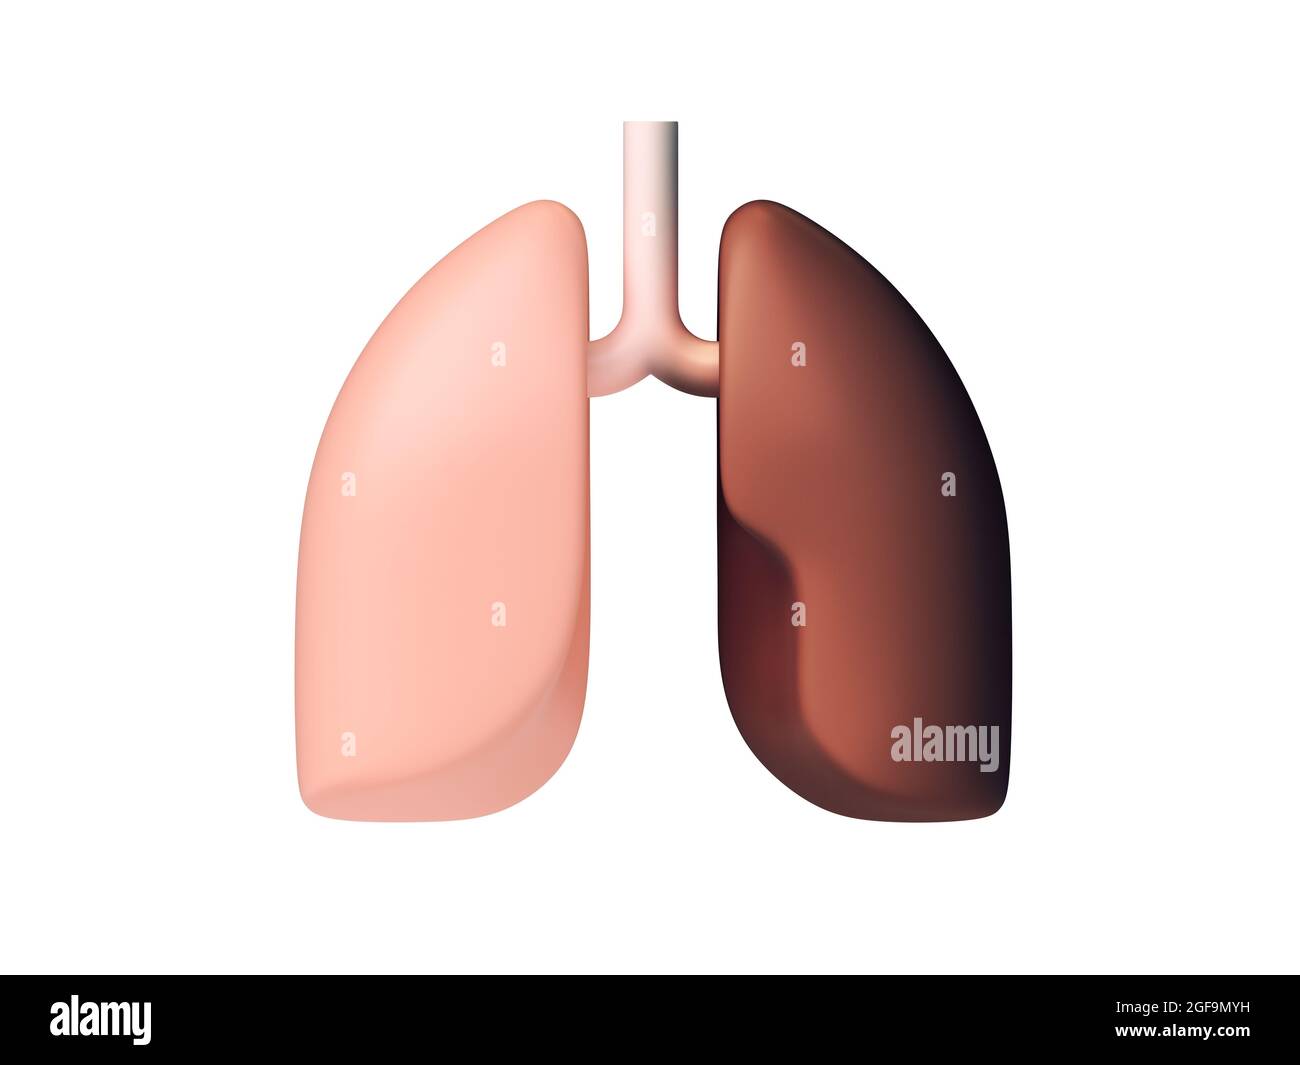 illustrazione 3d di polmoni umani sani e malsani, concetto di dipendenza da fumo. Ispirato al design piatto Foto Stock